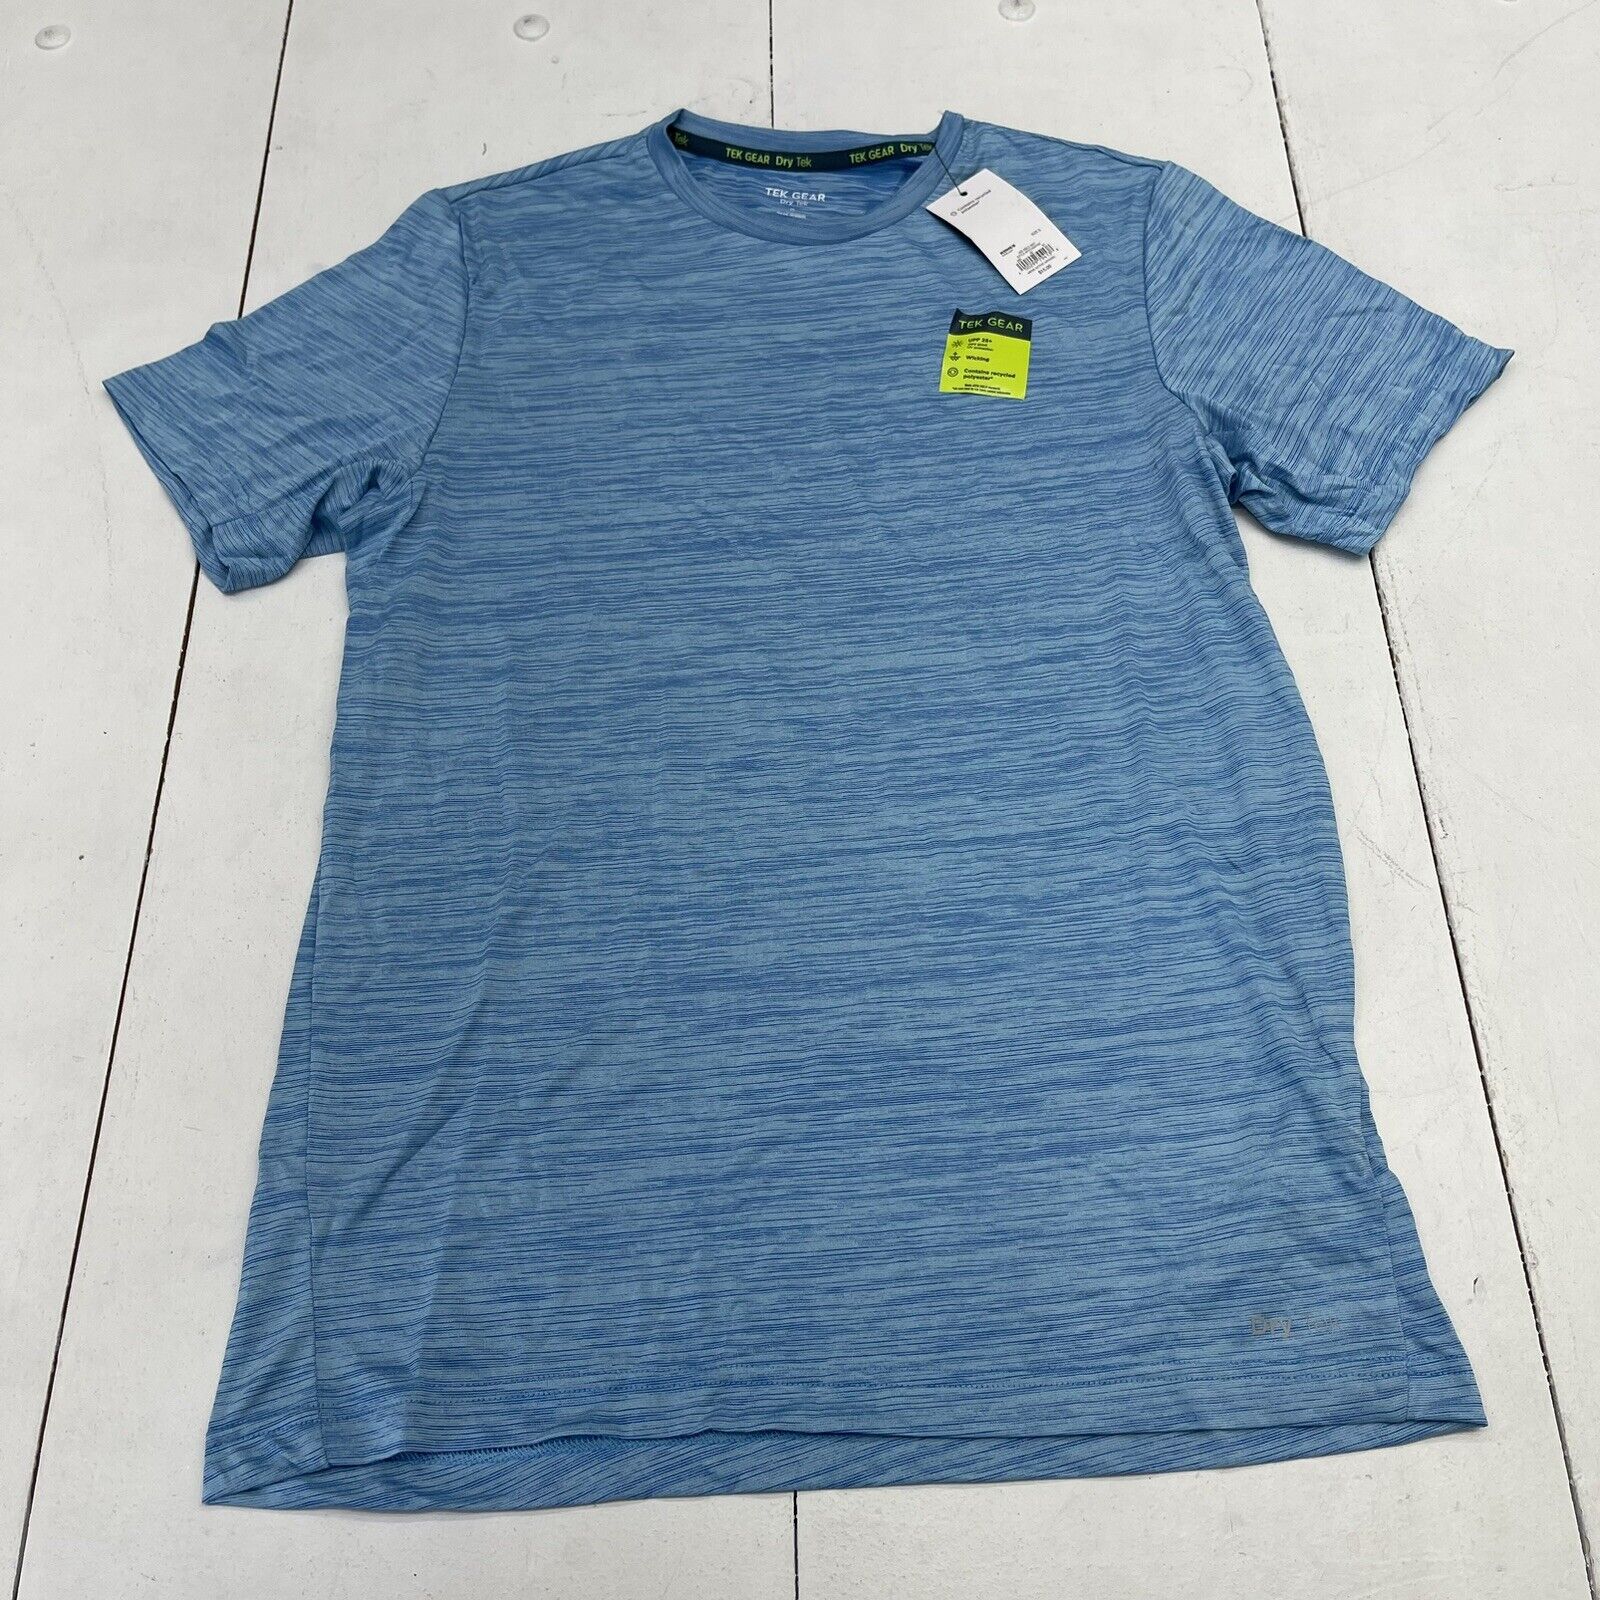 Tek Gear DryTek Blue Moisture Wicking Active Short Sleeve Shirt Mens Size  Big 3X